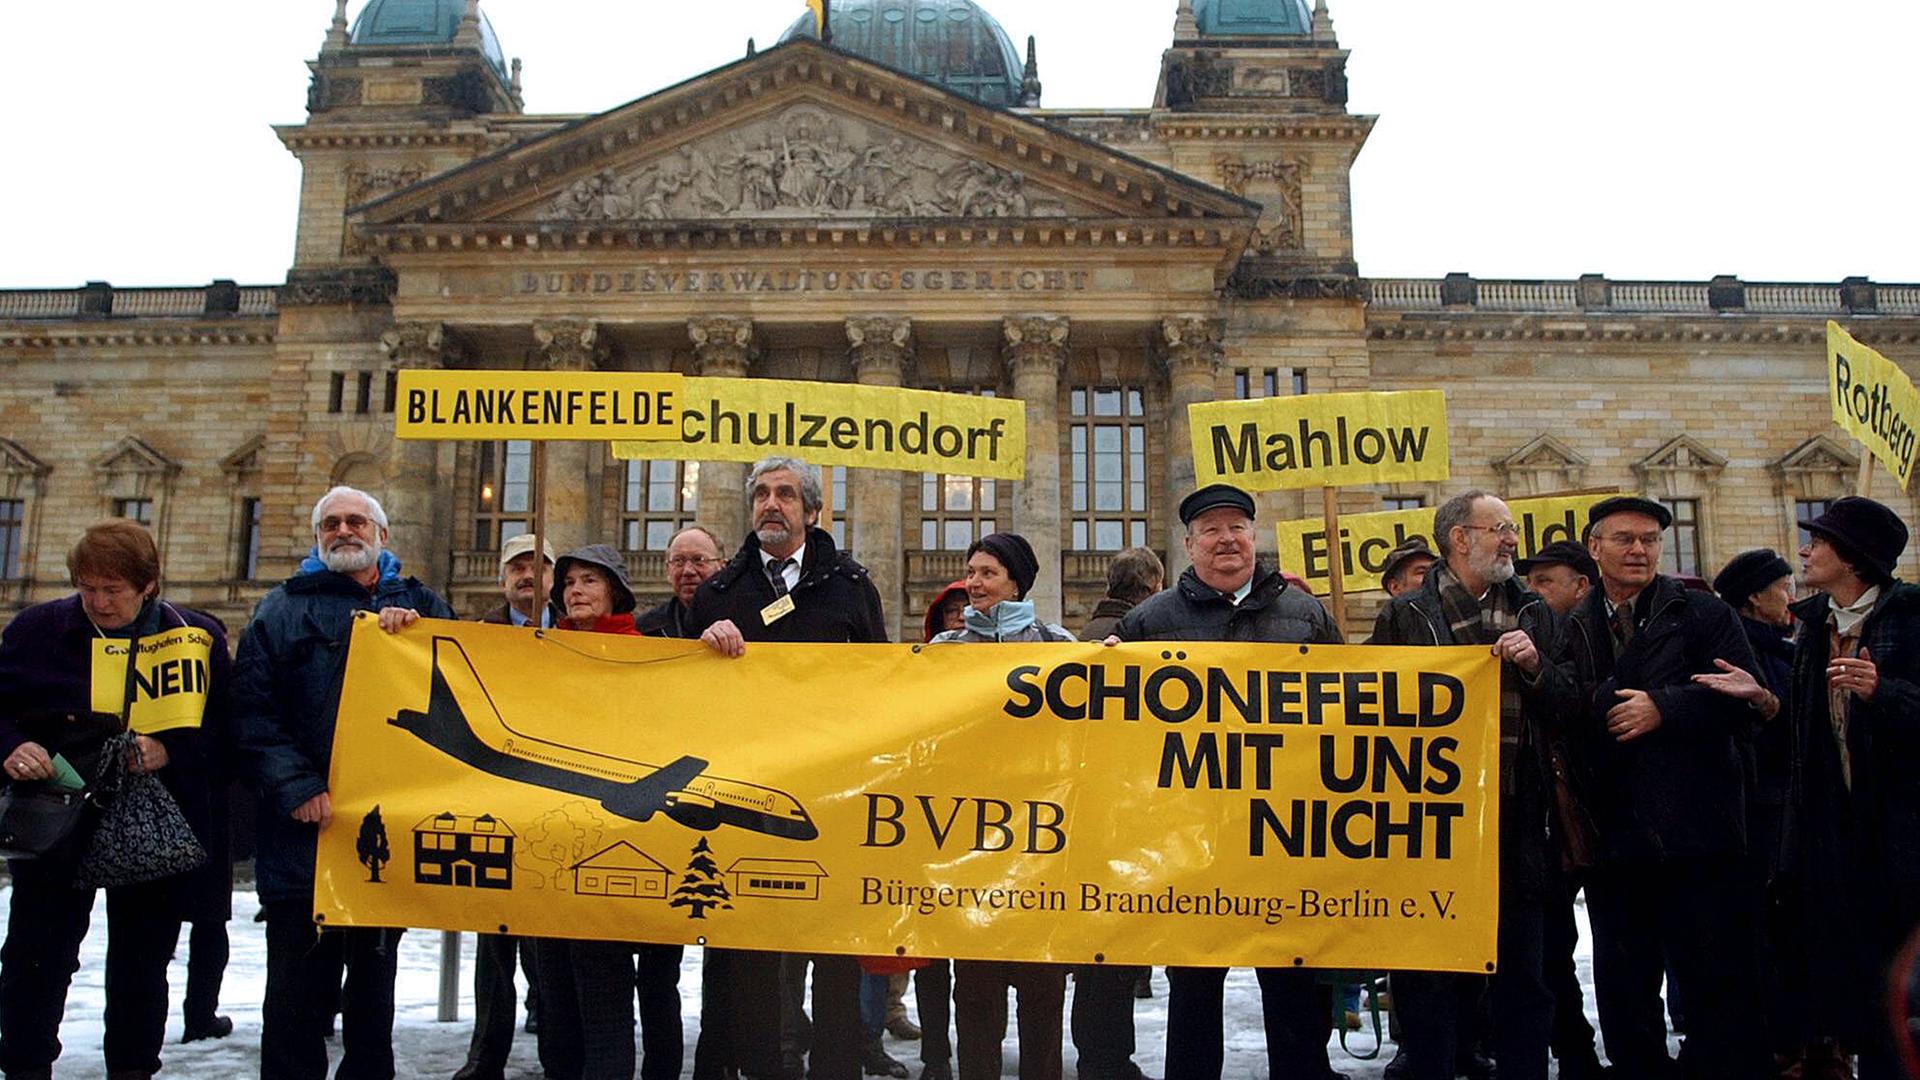 Archiv: Der Bürgerverein Brandenburg Berlin e.V. (BVBB) demonstriert vor dem Bundesverwaltungsgericht gegen den Ausbau des Flughafens Berlin Schönefeld am 07.02.2006